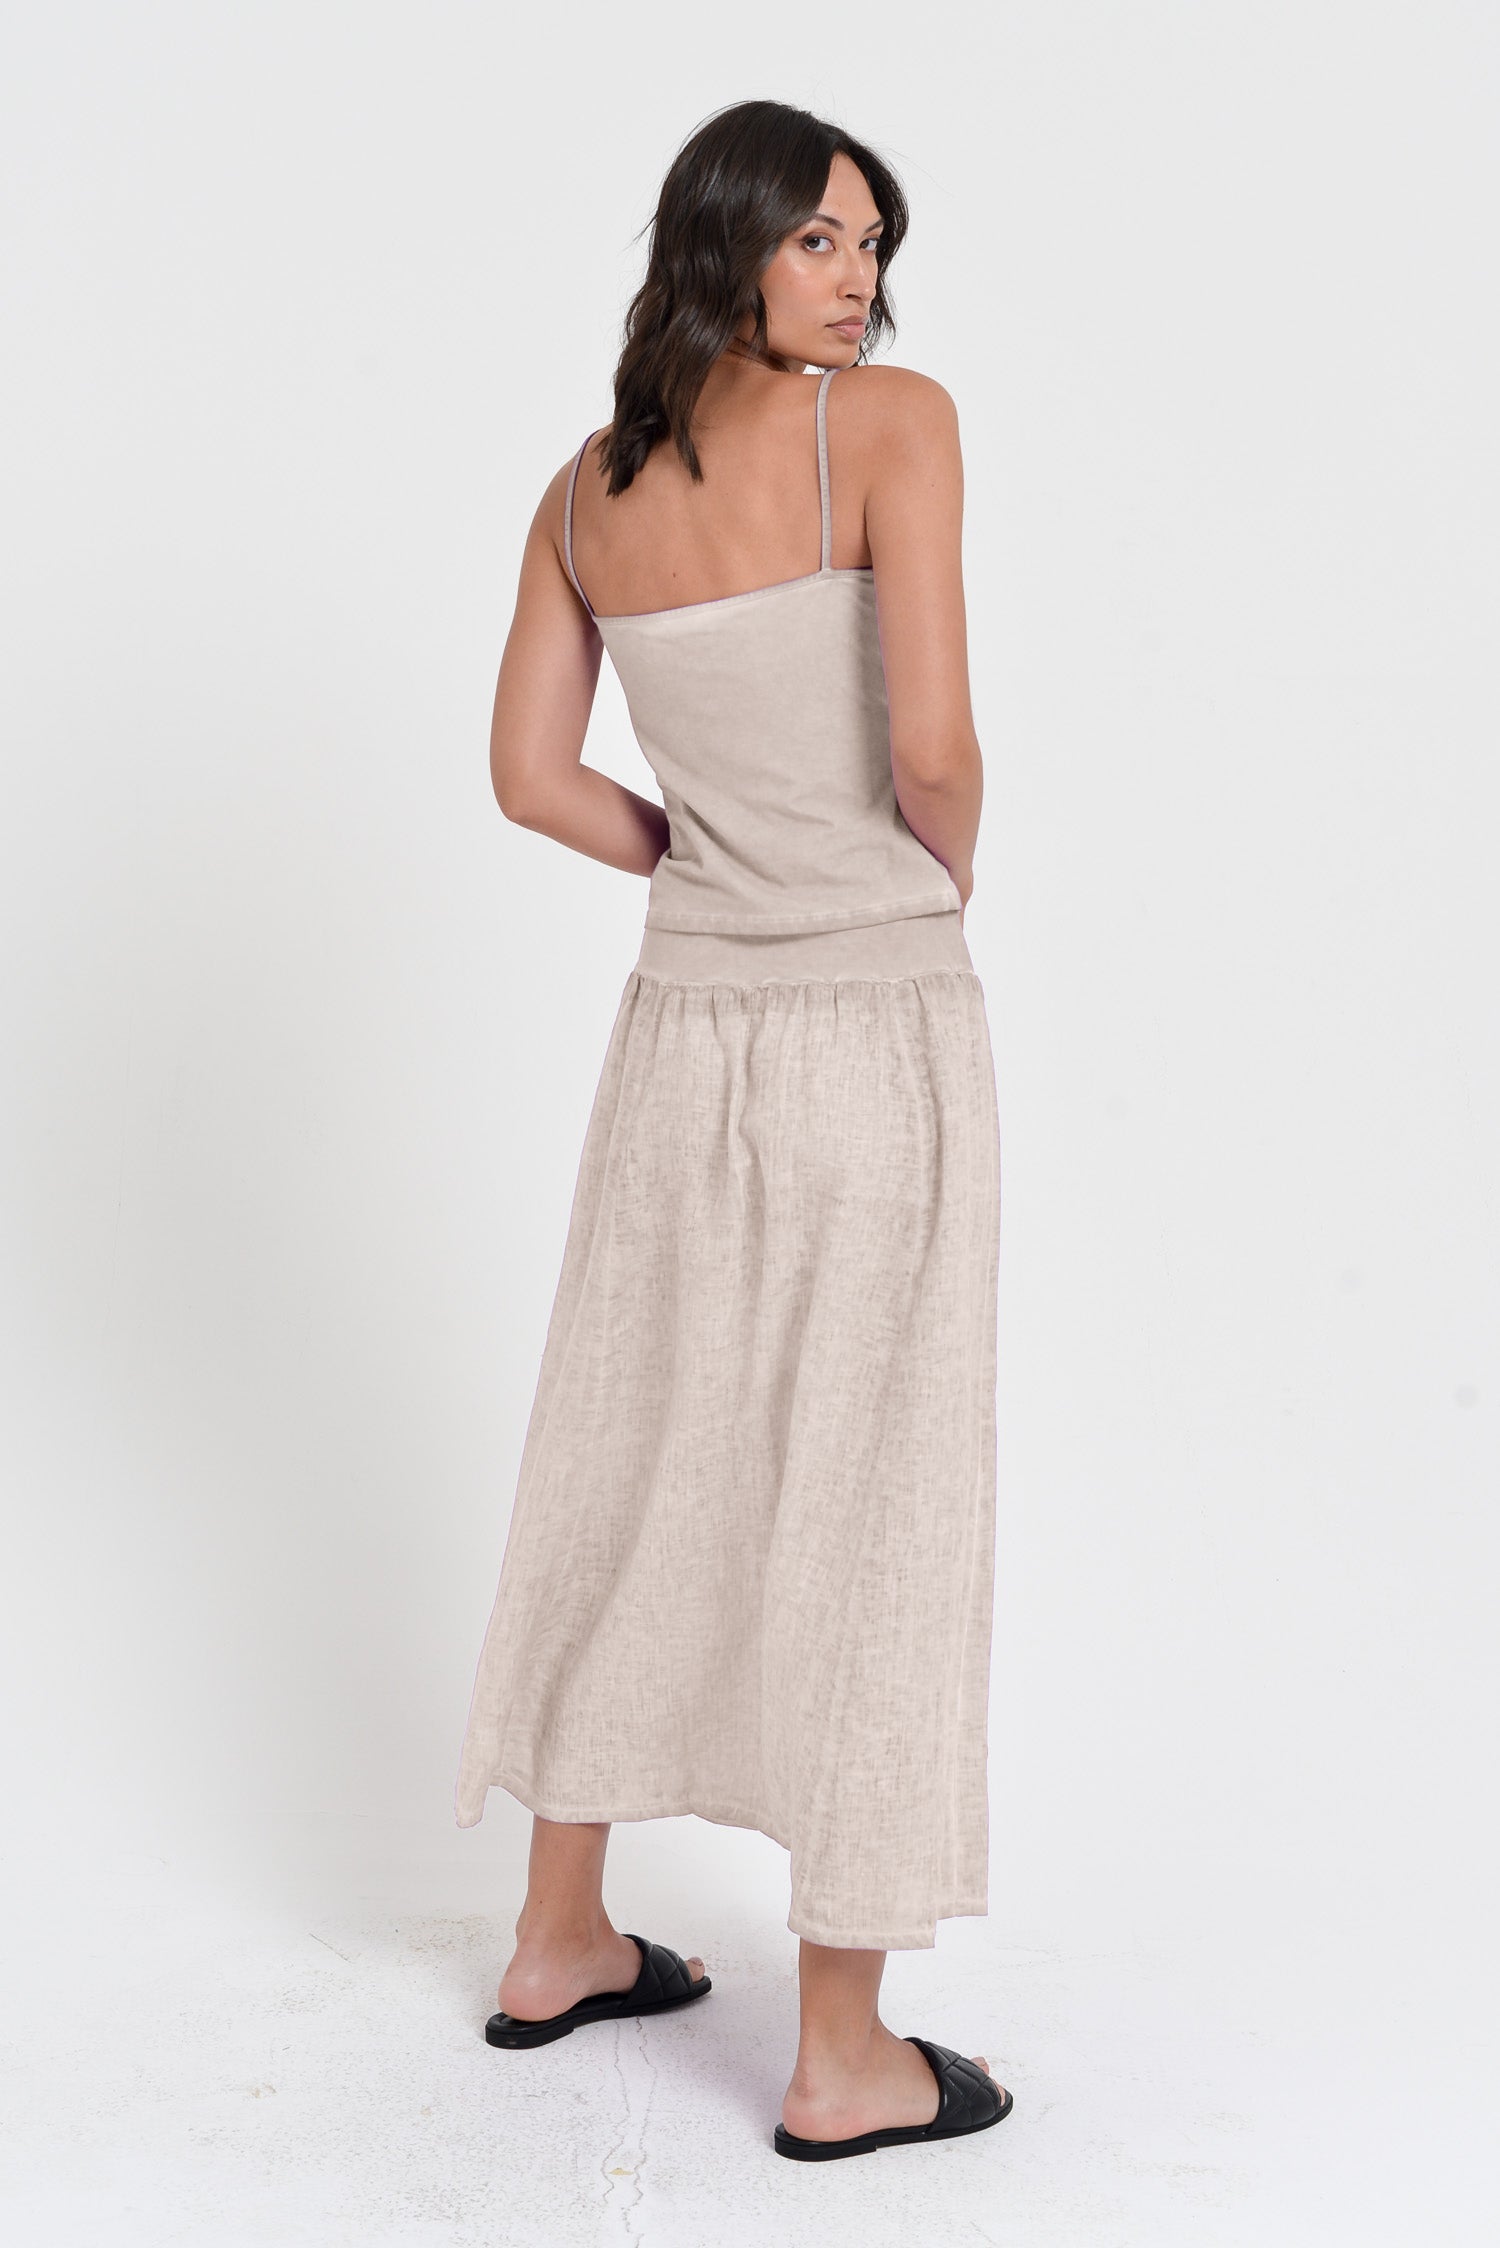 Maxime Skirt - Women's Breezy Linen Skirt - Canapa